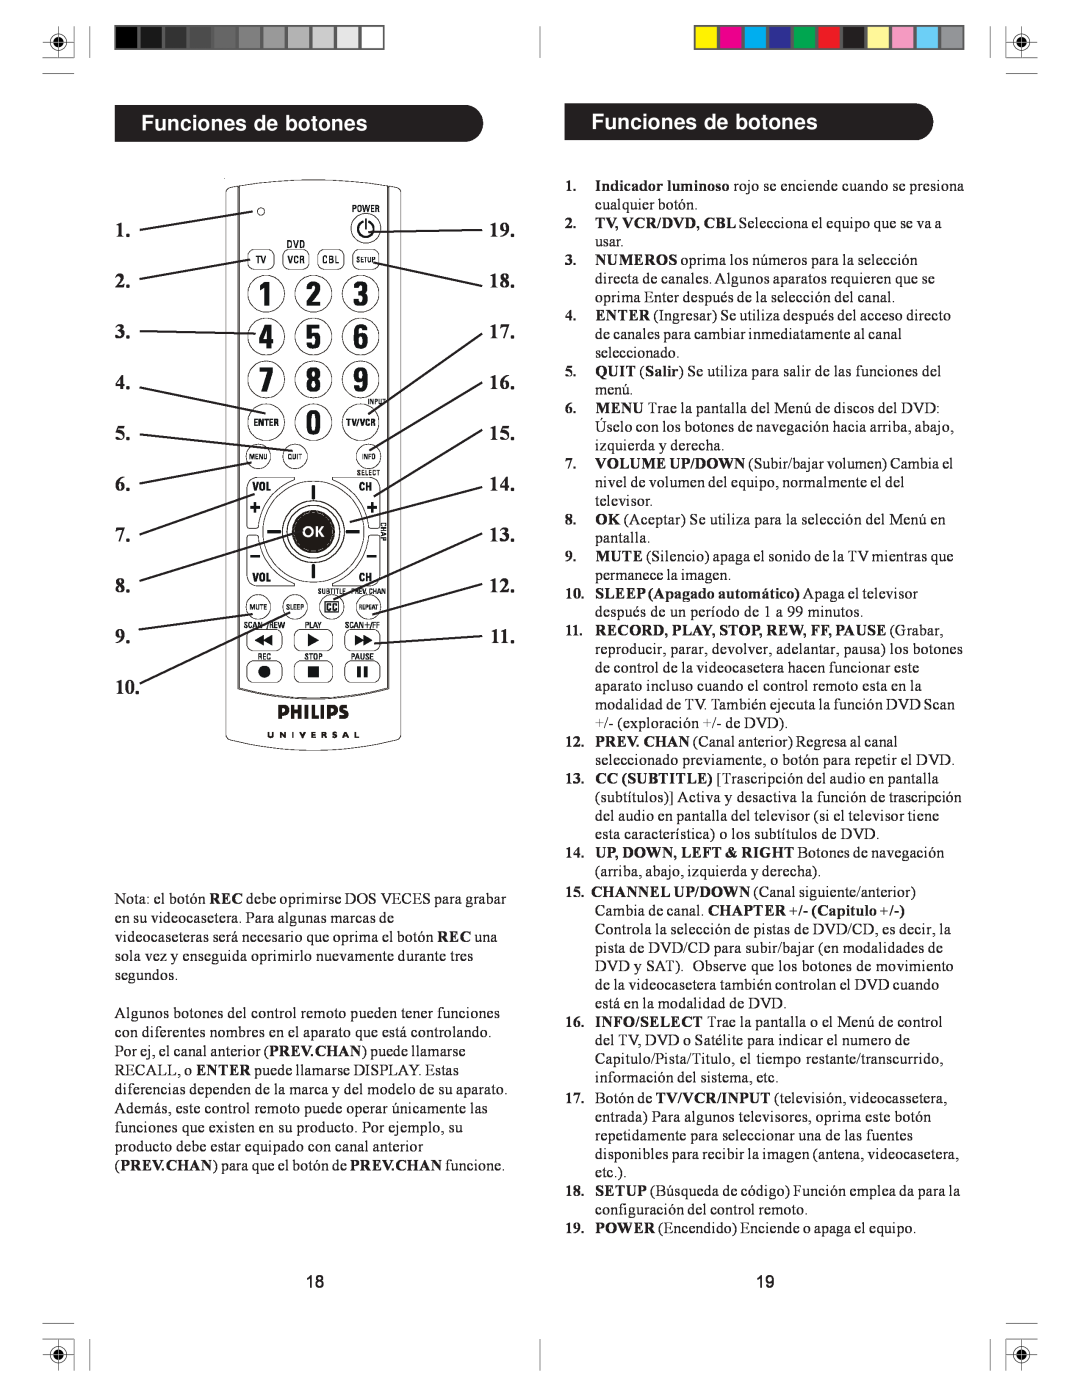 Philips SRU2103S/27 owner manual Funciones de botones, OK Aceptar Se utiliza para la selección del Menú en, pantalla 